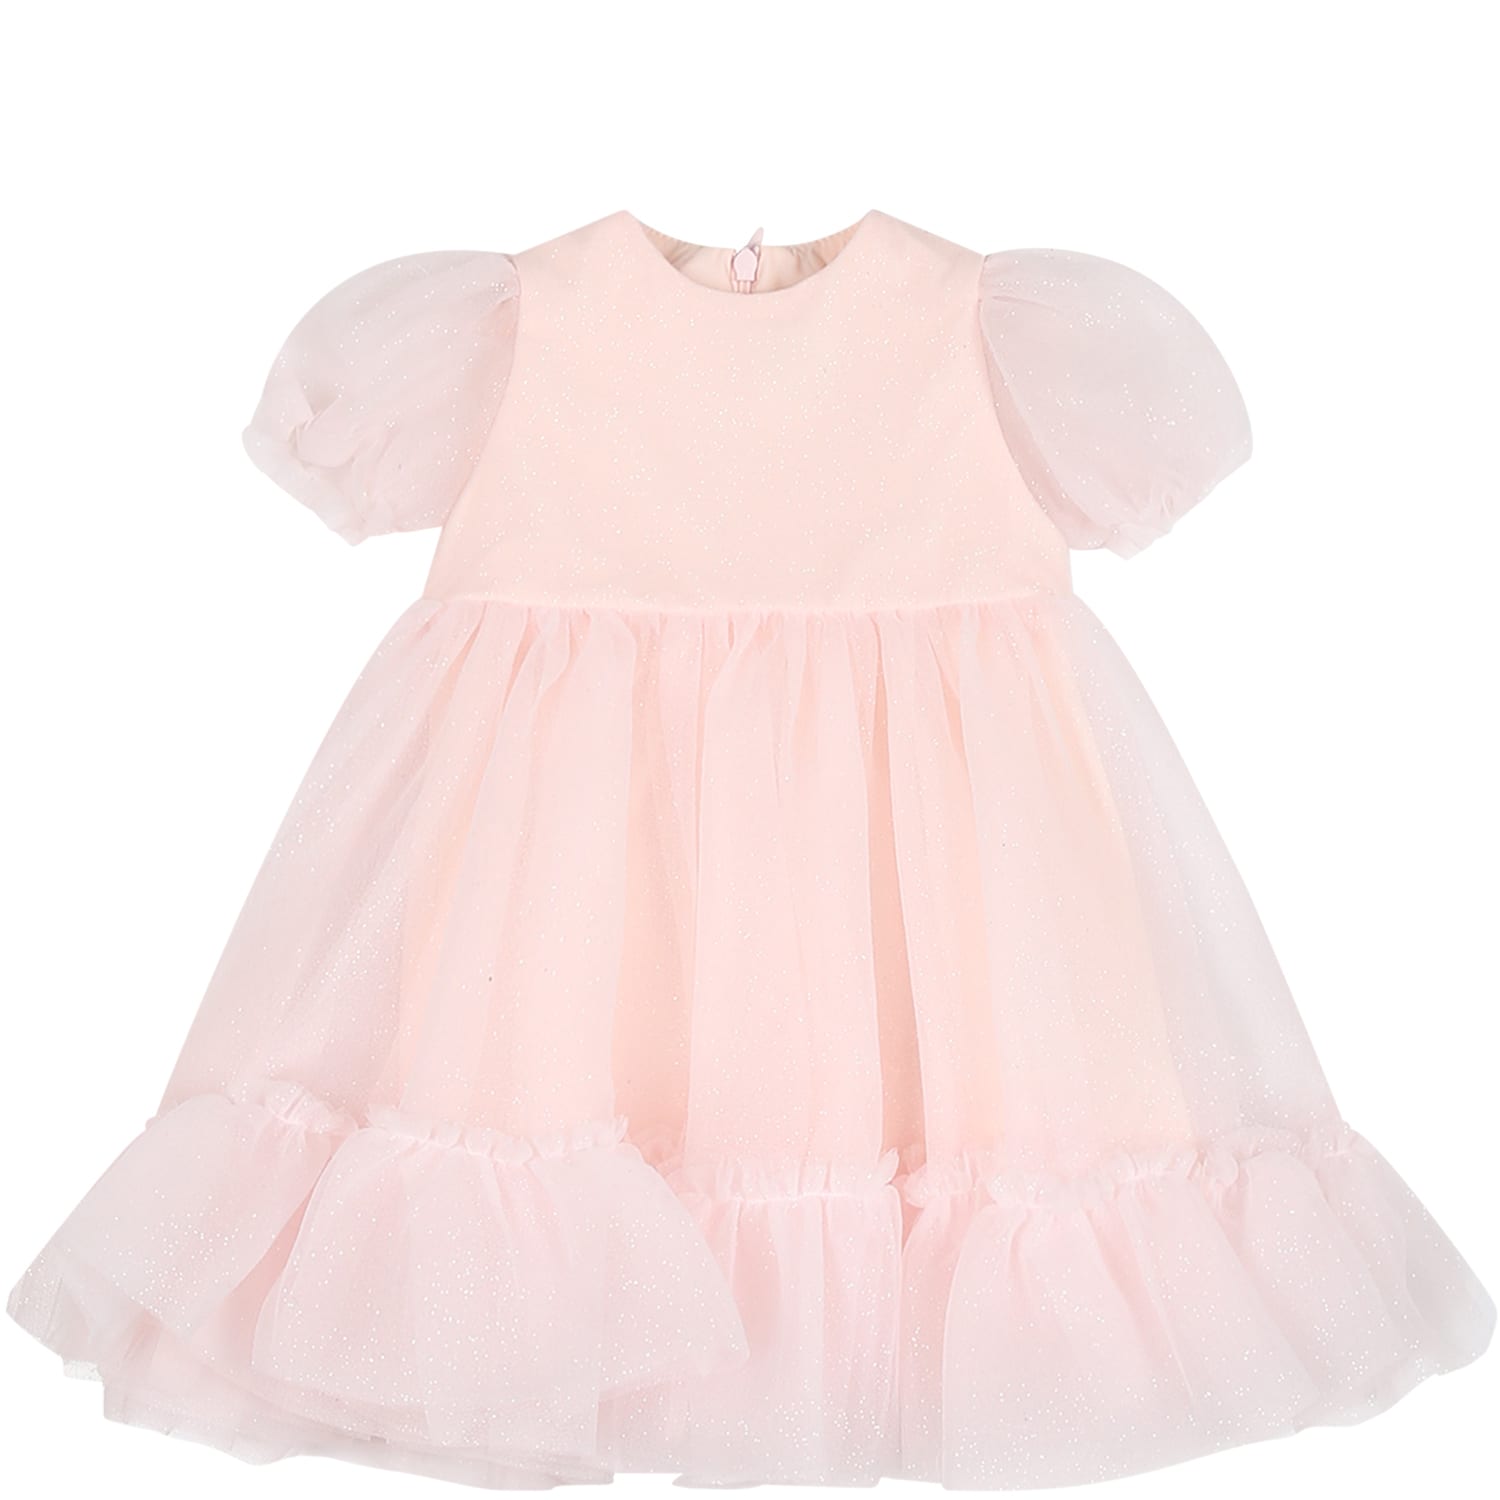 Simonetta Pink Dress For Baby Girl In Ivory